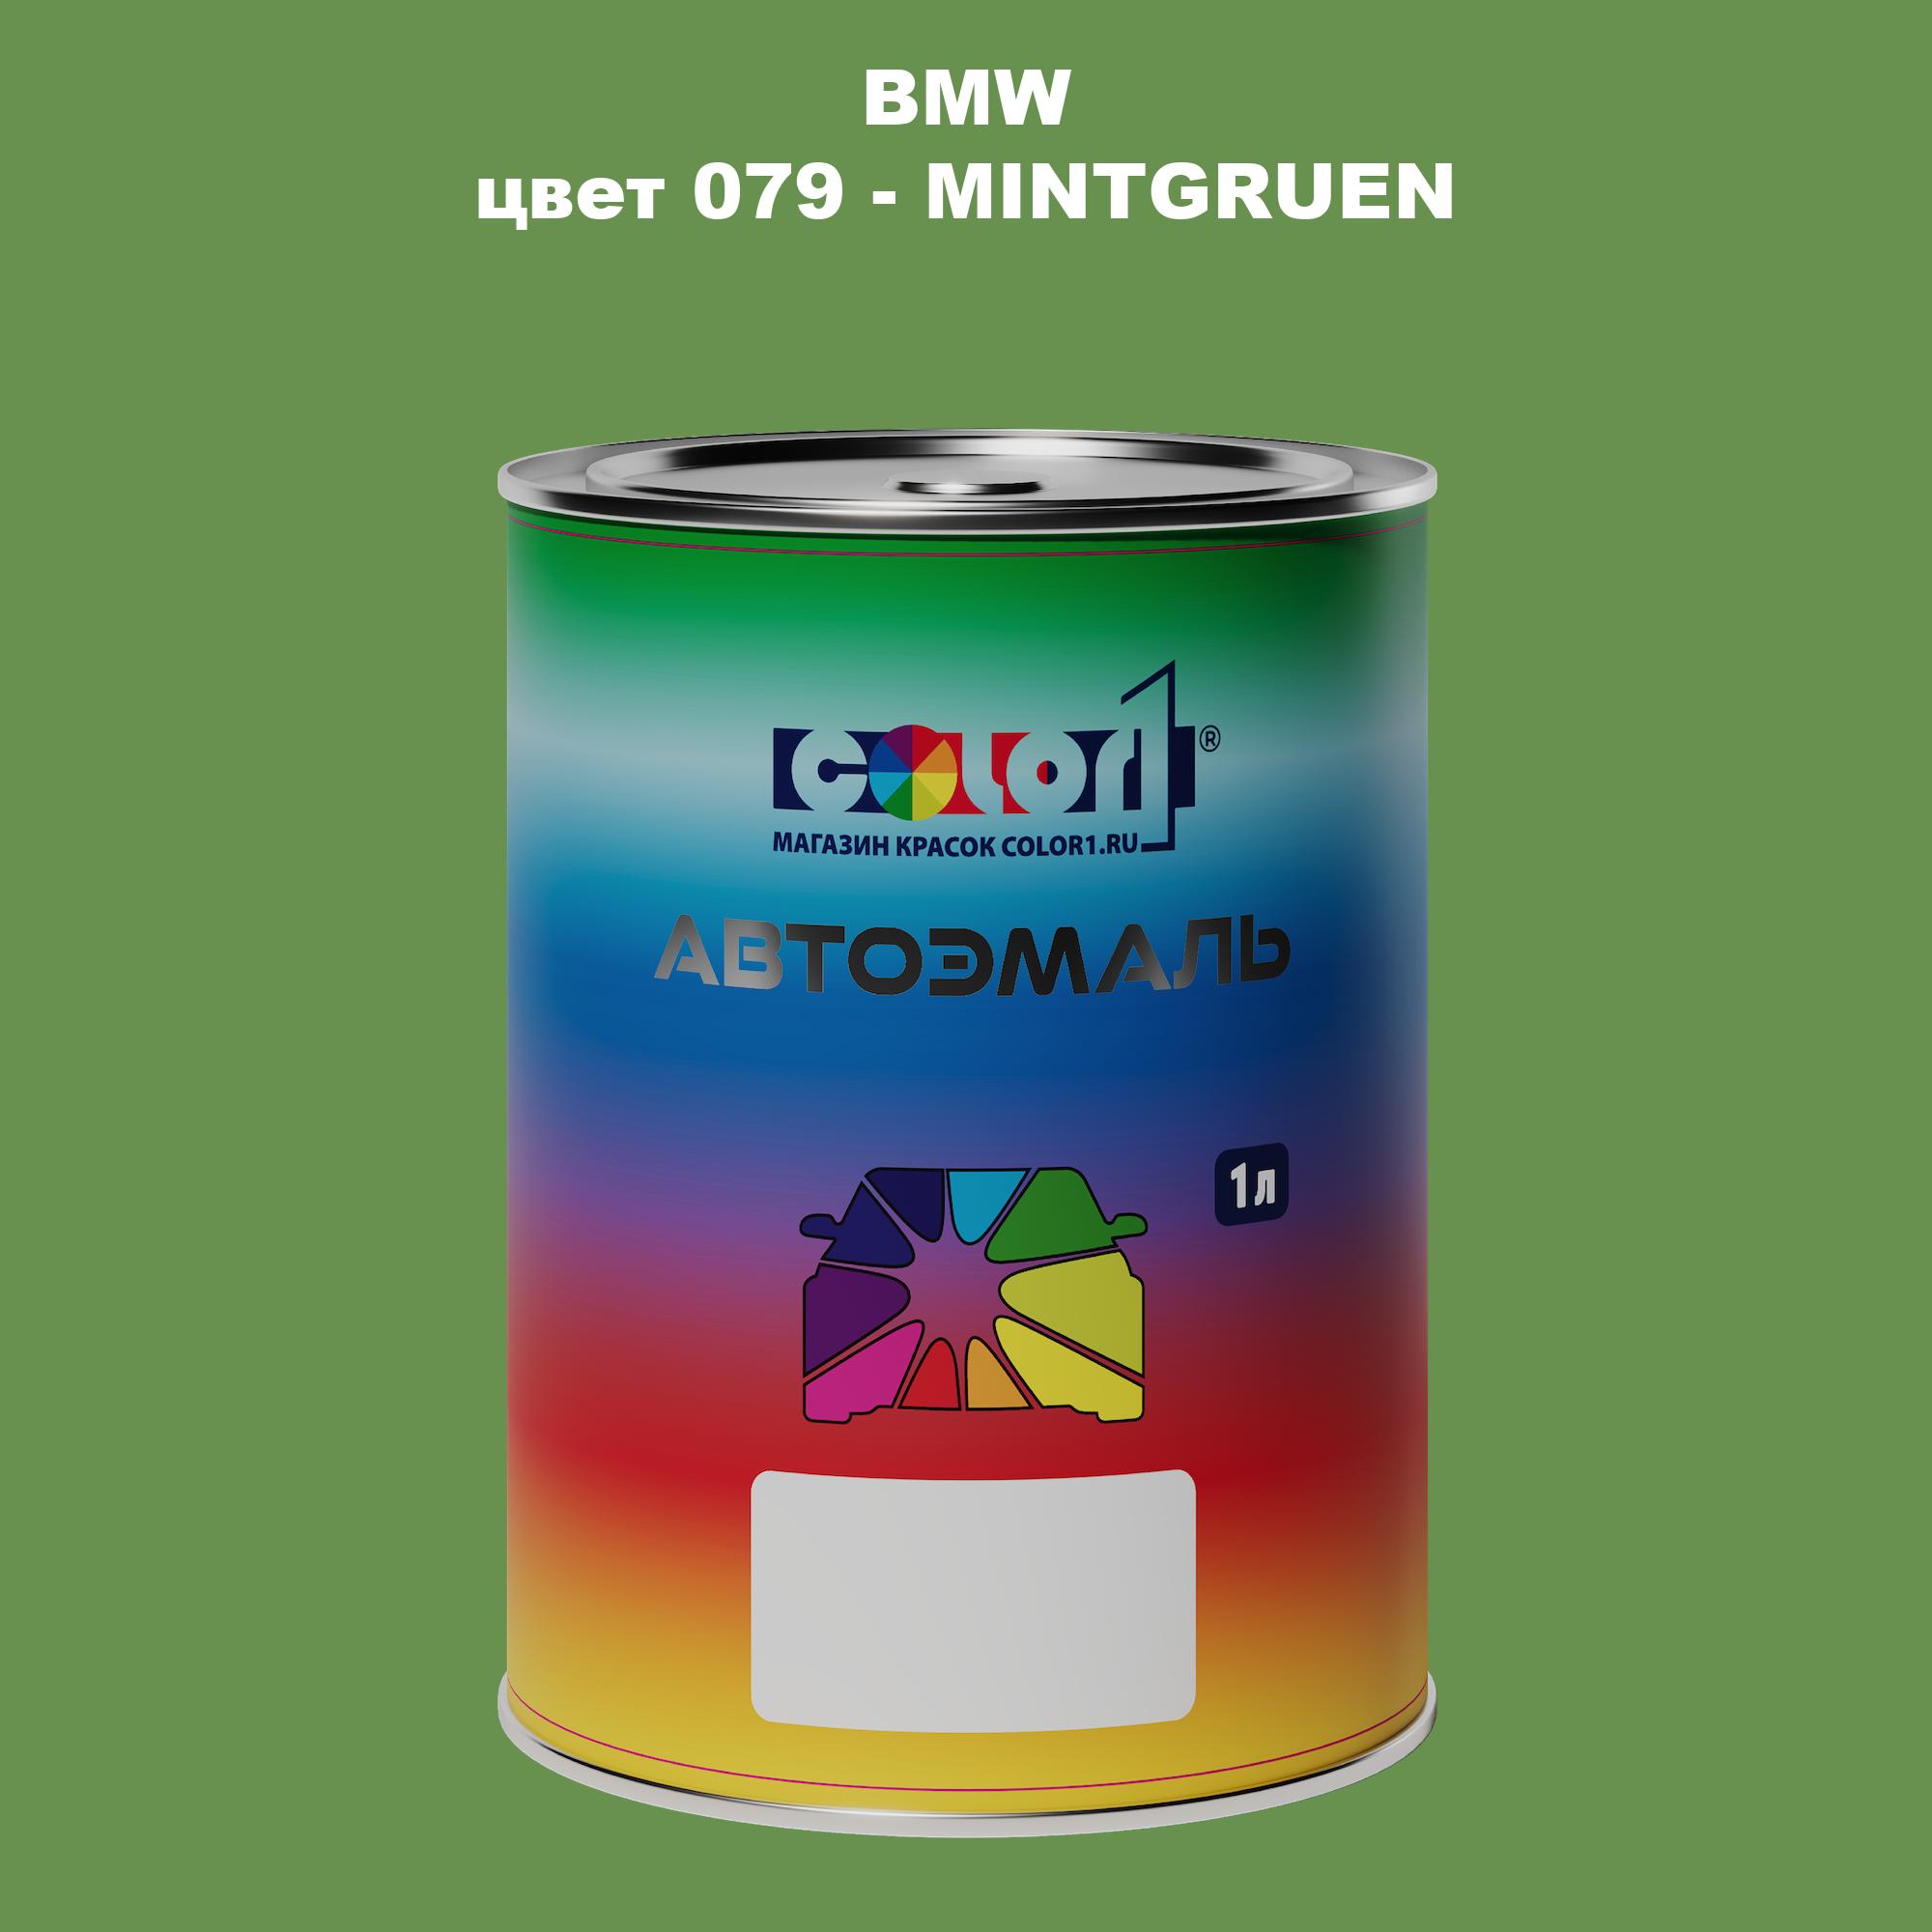 Автомобильная краска COLOR1 для BMW, цвет 079 - MINTGRUEN